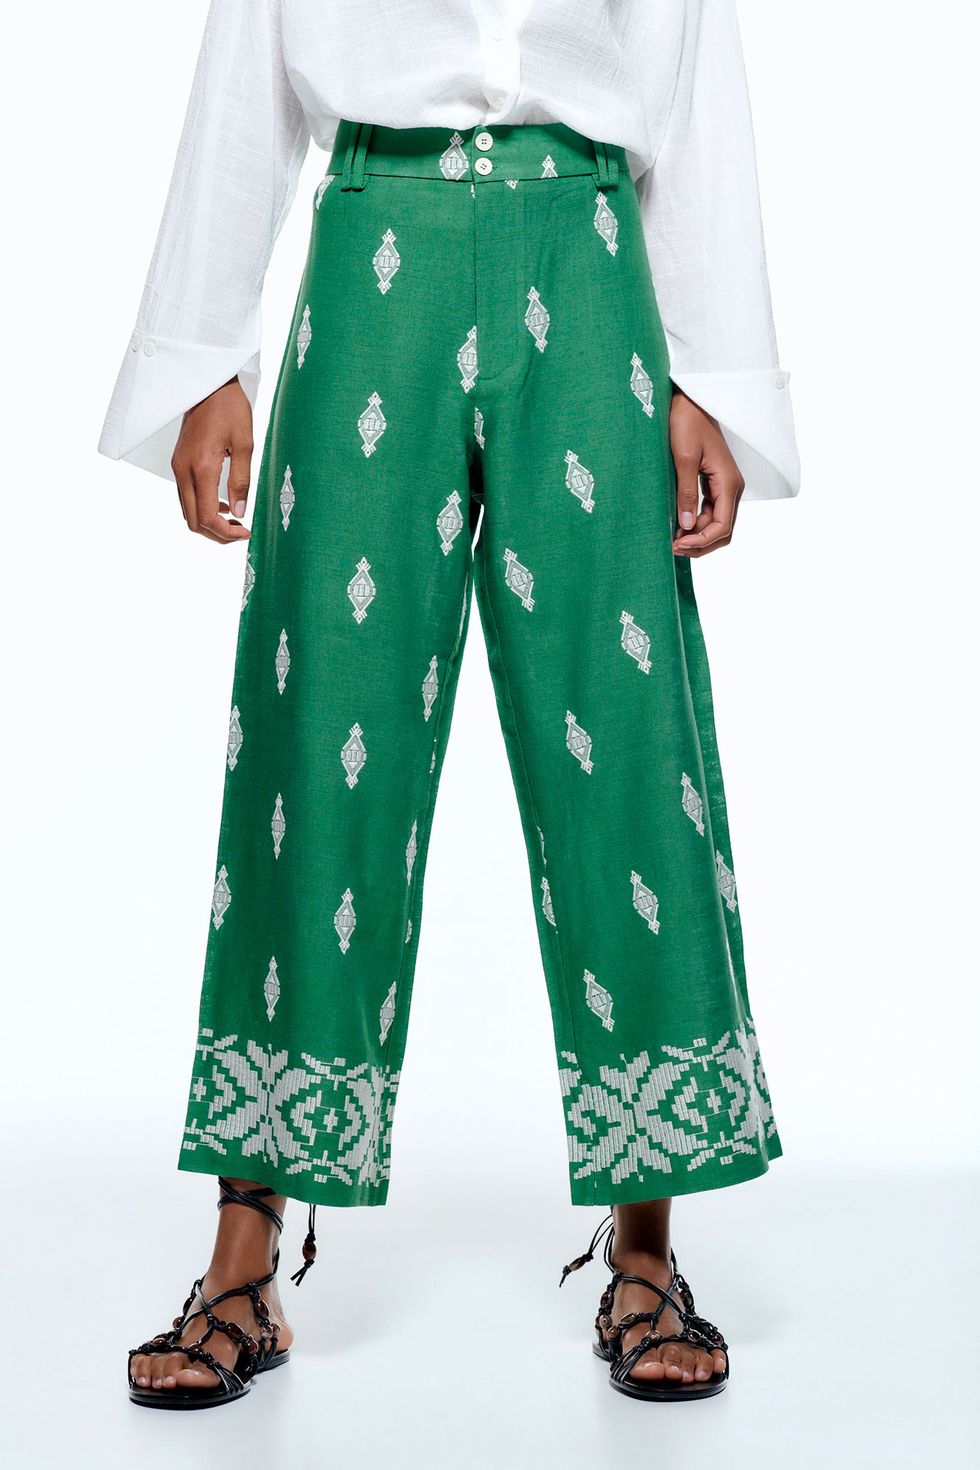 El culotte verde estrella de Zara bordado